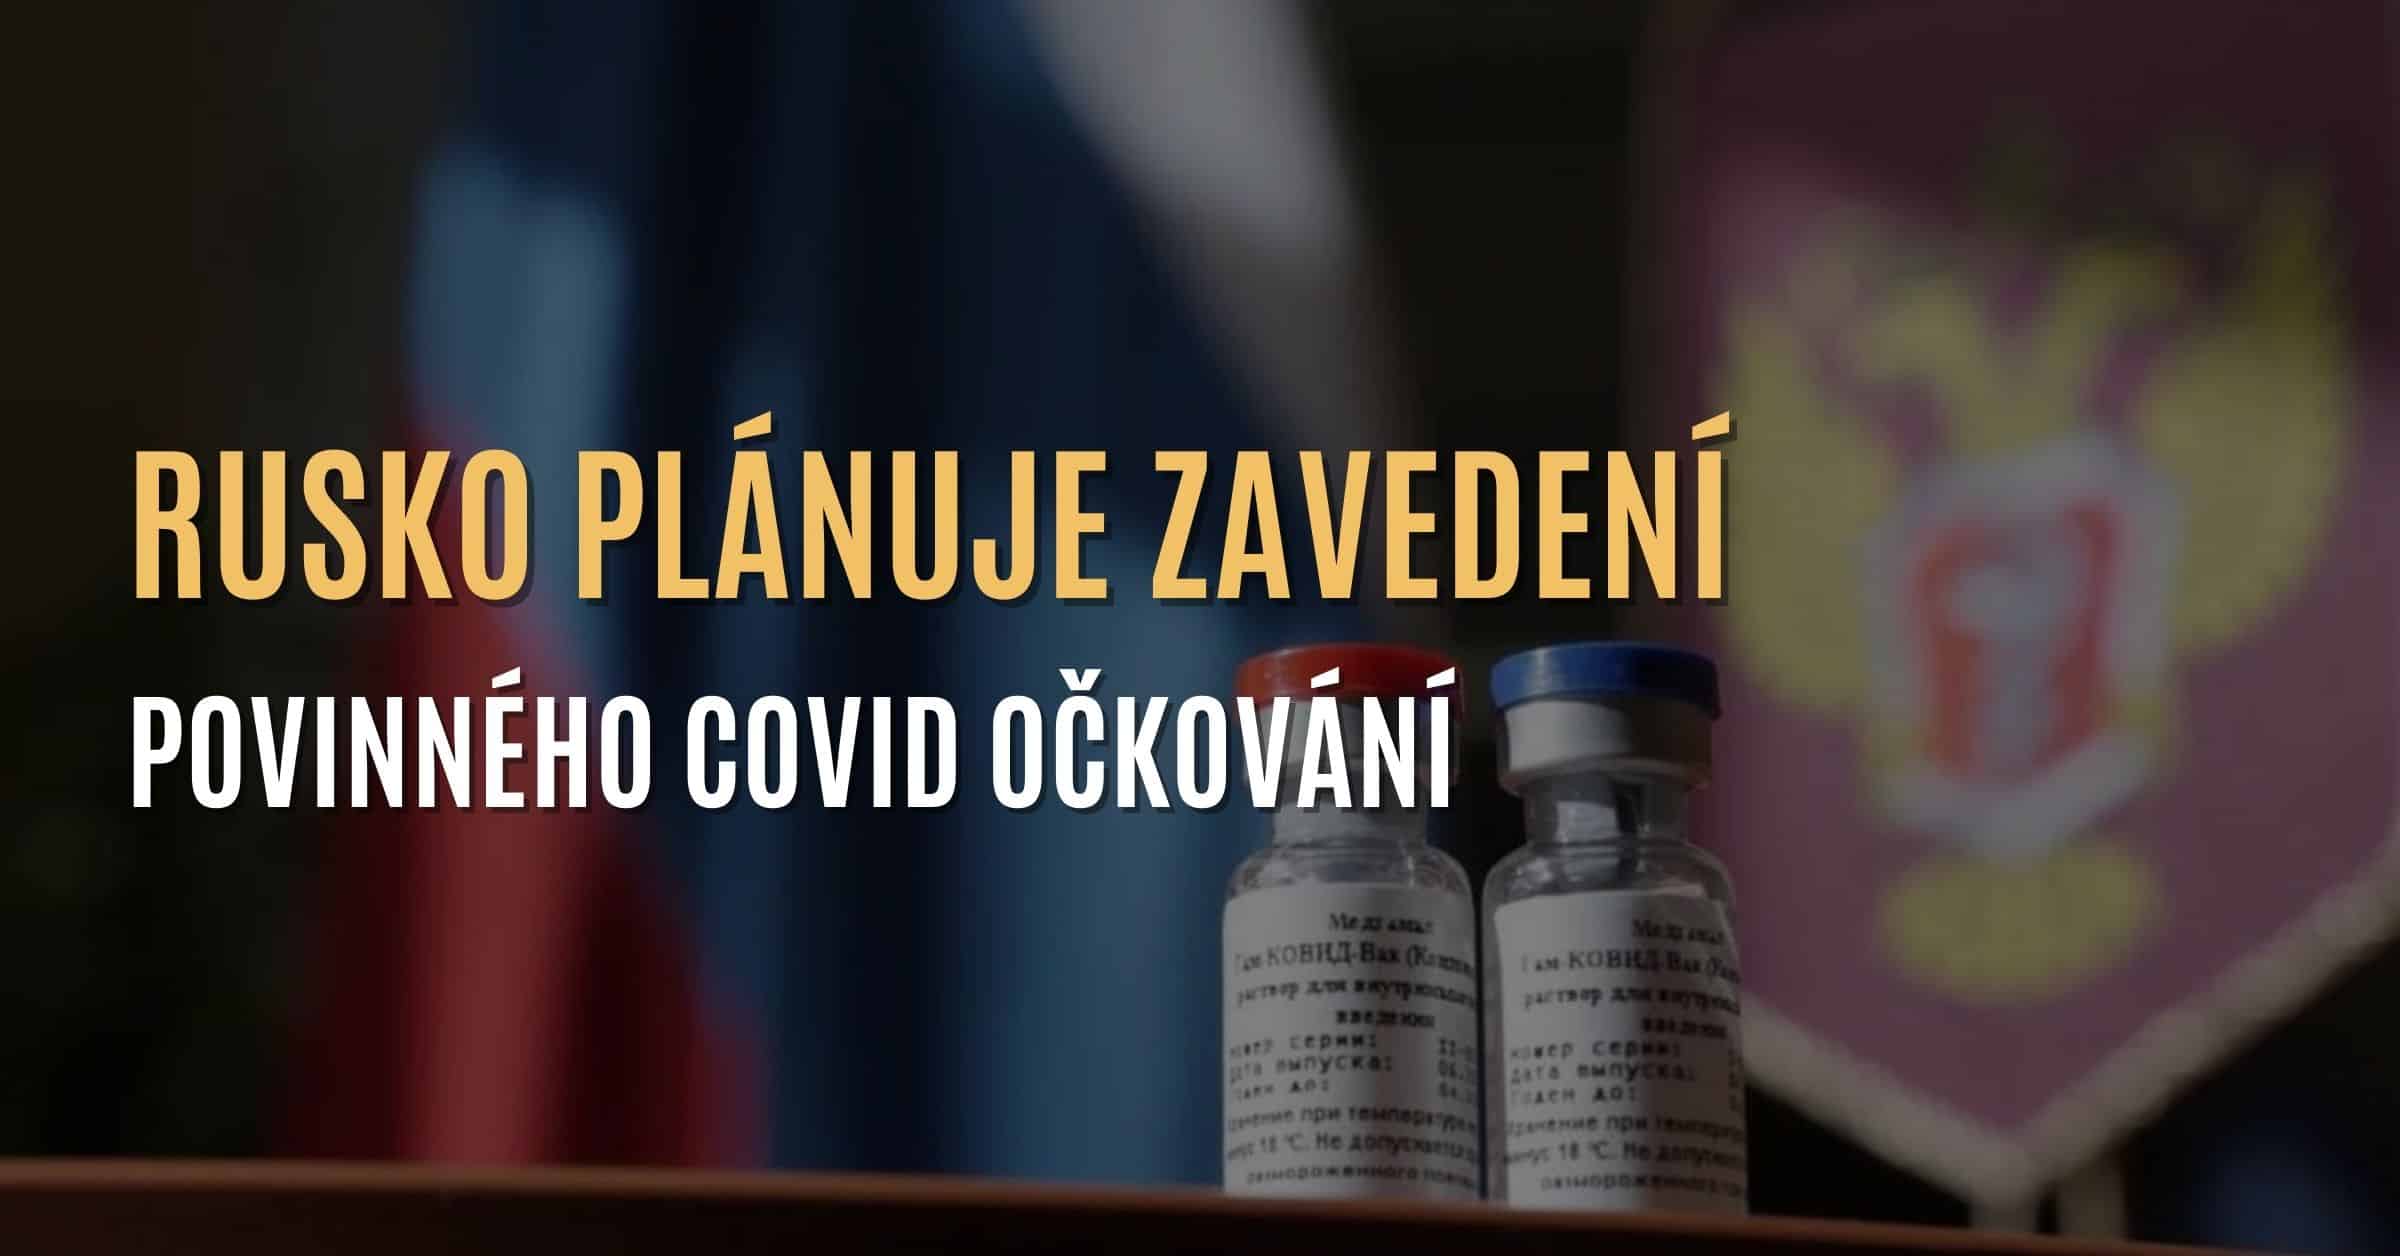 Rusko „směřuje” k zavedení povinného COVID očkování do národního očkovacího kalendáře